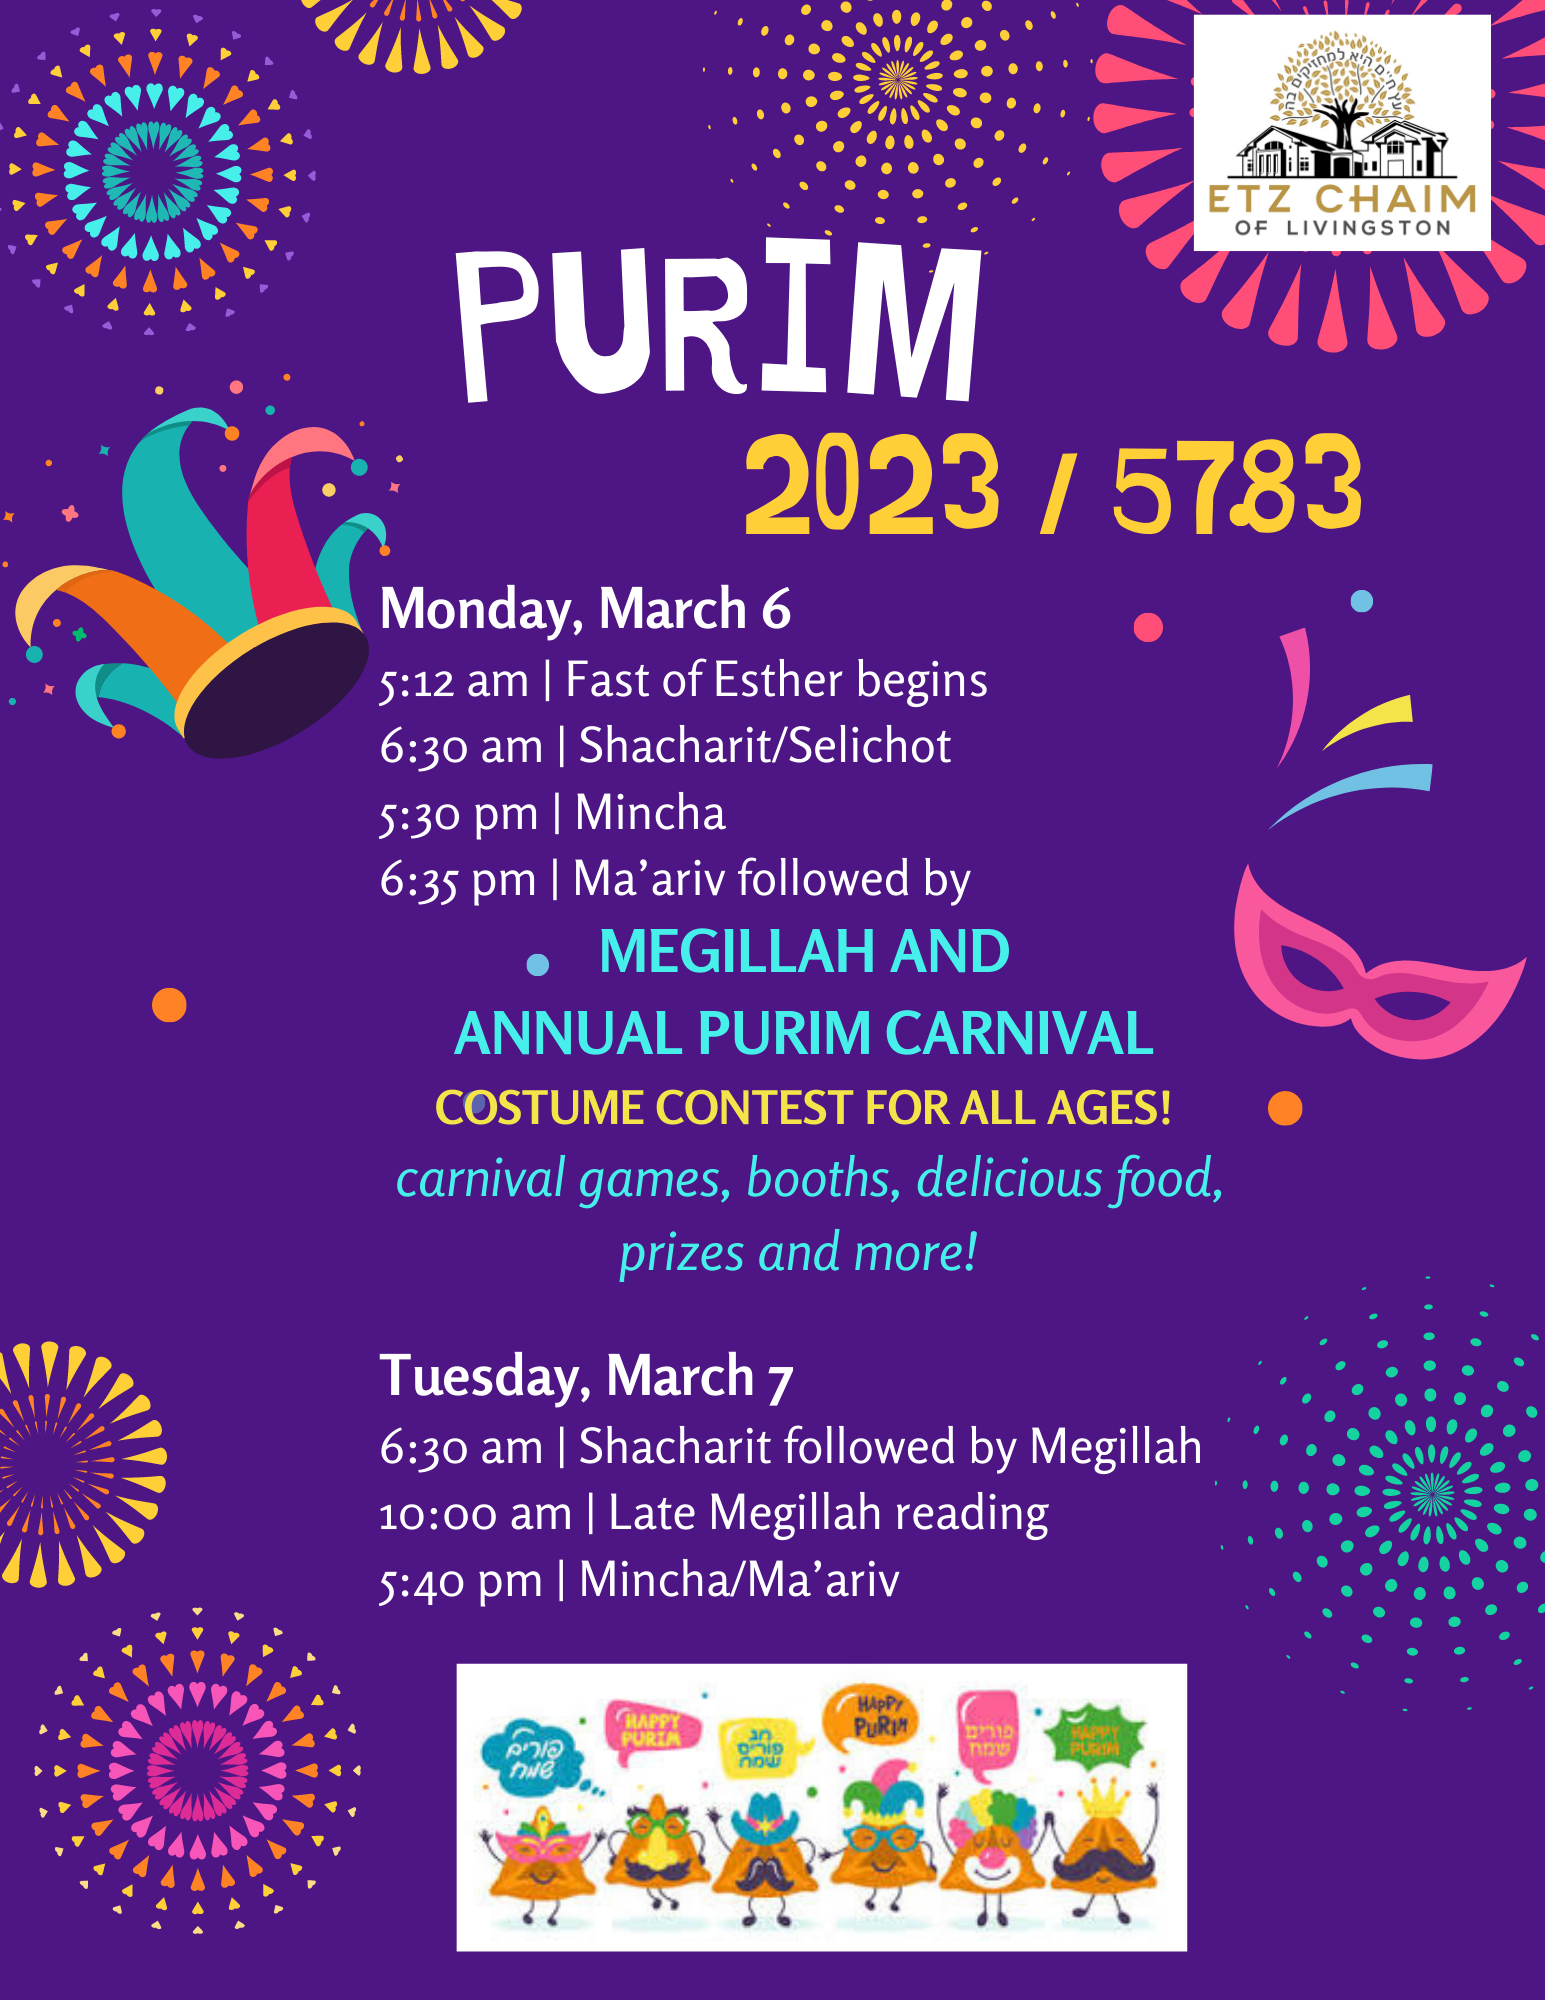 Megillah Reading & Purim Carnival!